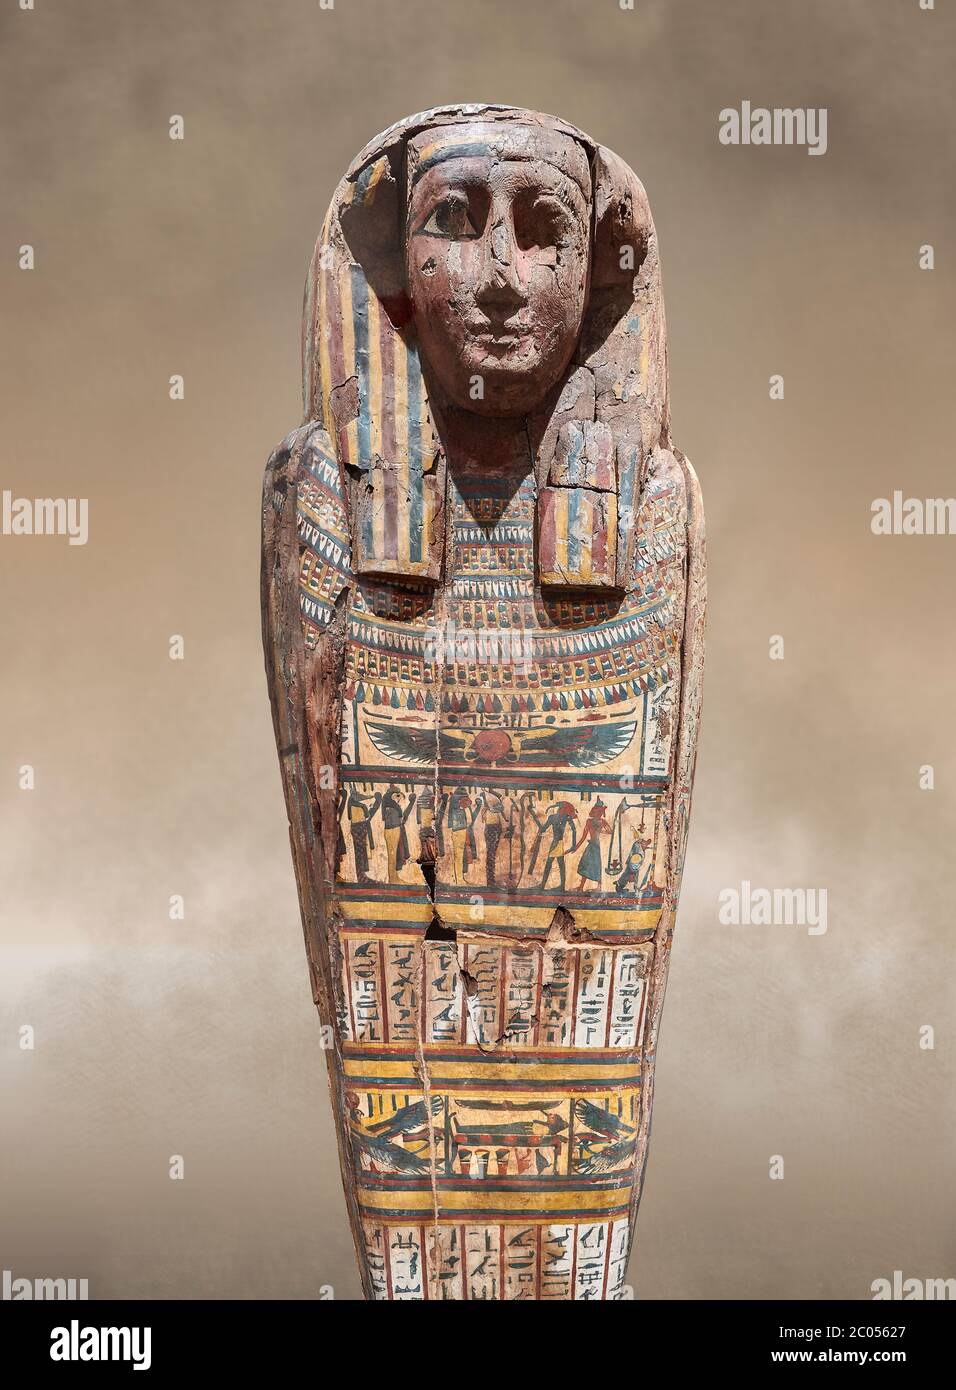 Sarcophage égyptien en bois antique - la tombe de Tagiaset, Iuefdi & Harwa vers la 25ème dynastie (7ème cent av. J.-C.) Thèbes. Musée égyptien, Turin. Peut-être Banque D'Images